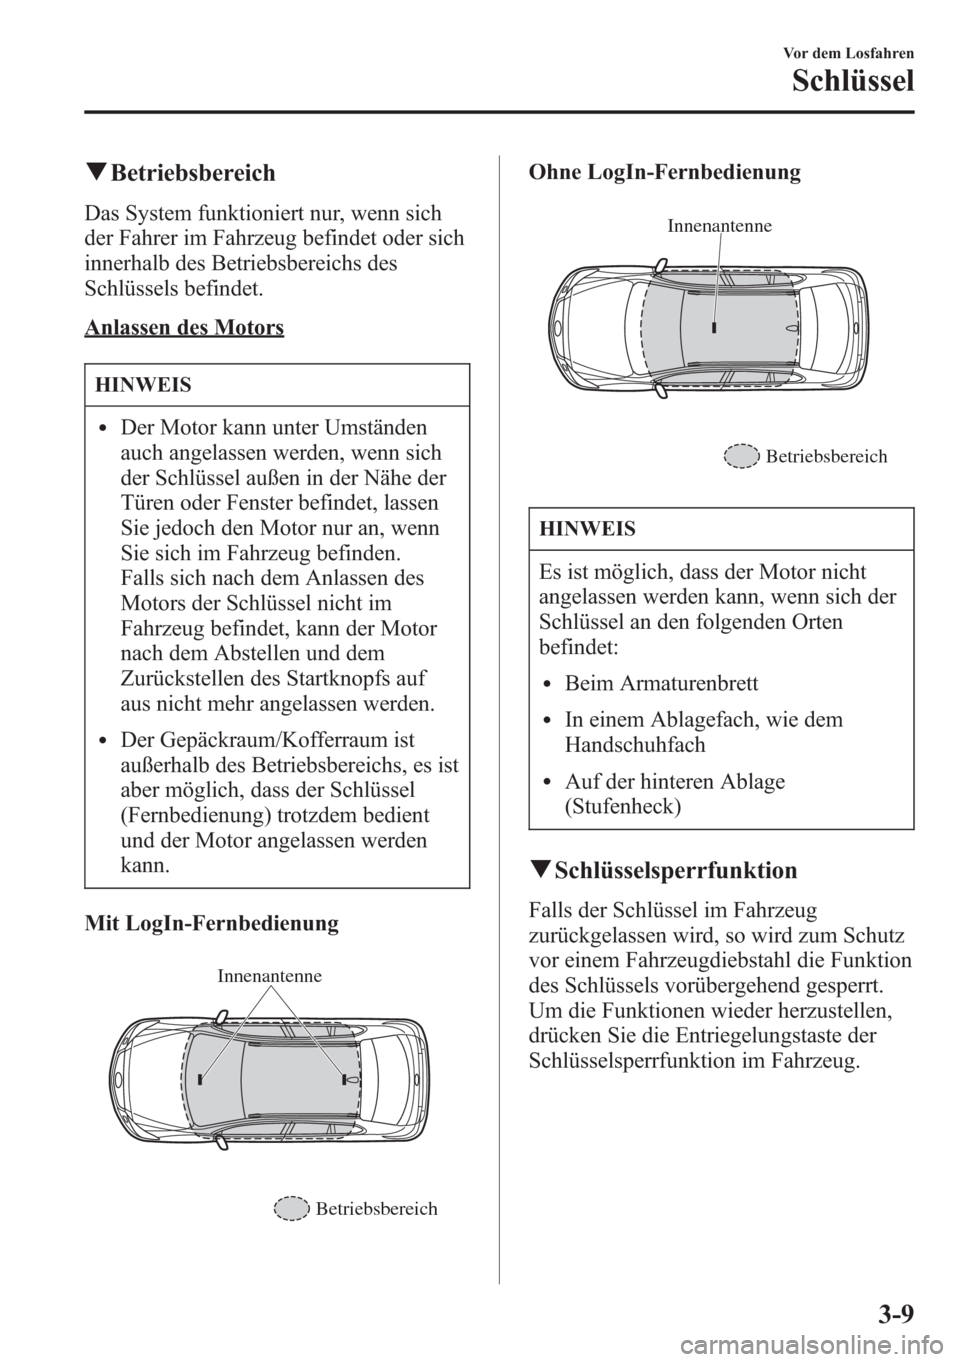 MAZDA MODEL 6 2015  Betriebsanleitung (in German) qBetriebsbereich
Das System funktioniert nur, wenn sich
der Fahrer im Fahrzeug befindet oder sich
innerhalb des Betriebsbereichs des
Schlüssels befindet.
Anlassen des Motors
HINWEIS
lDer Motor kann u